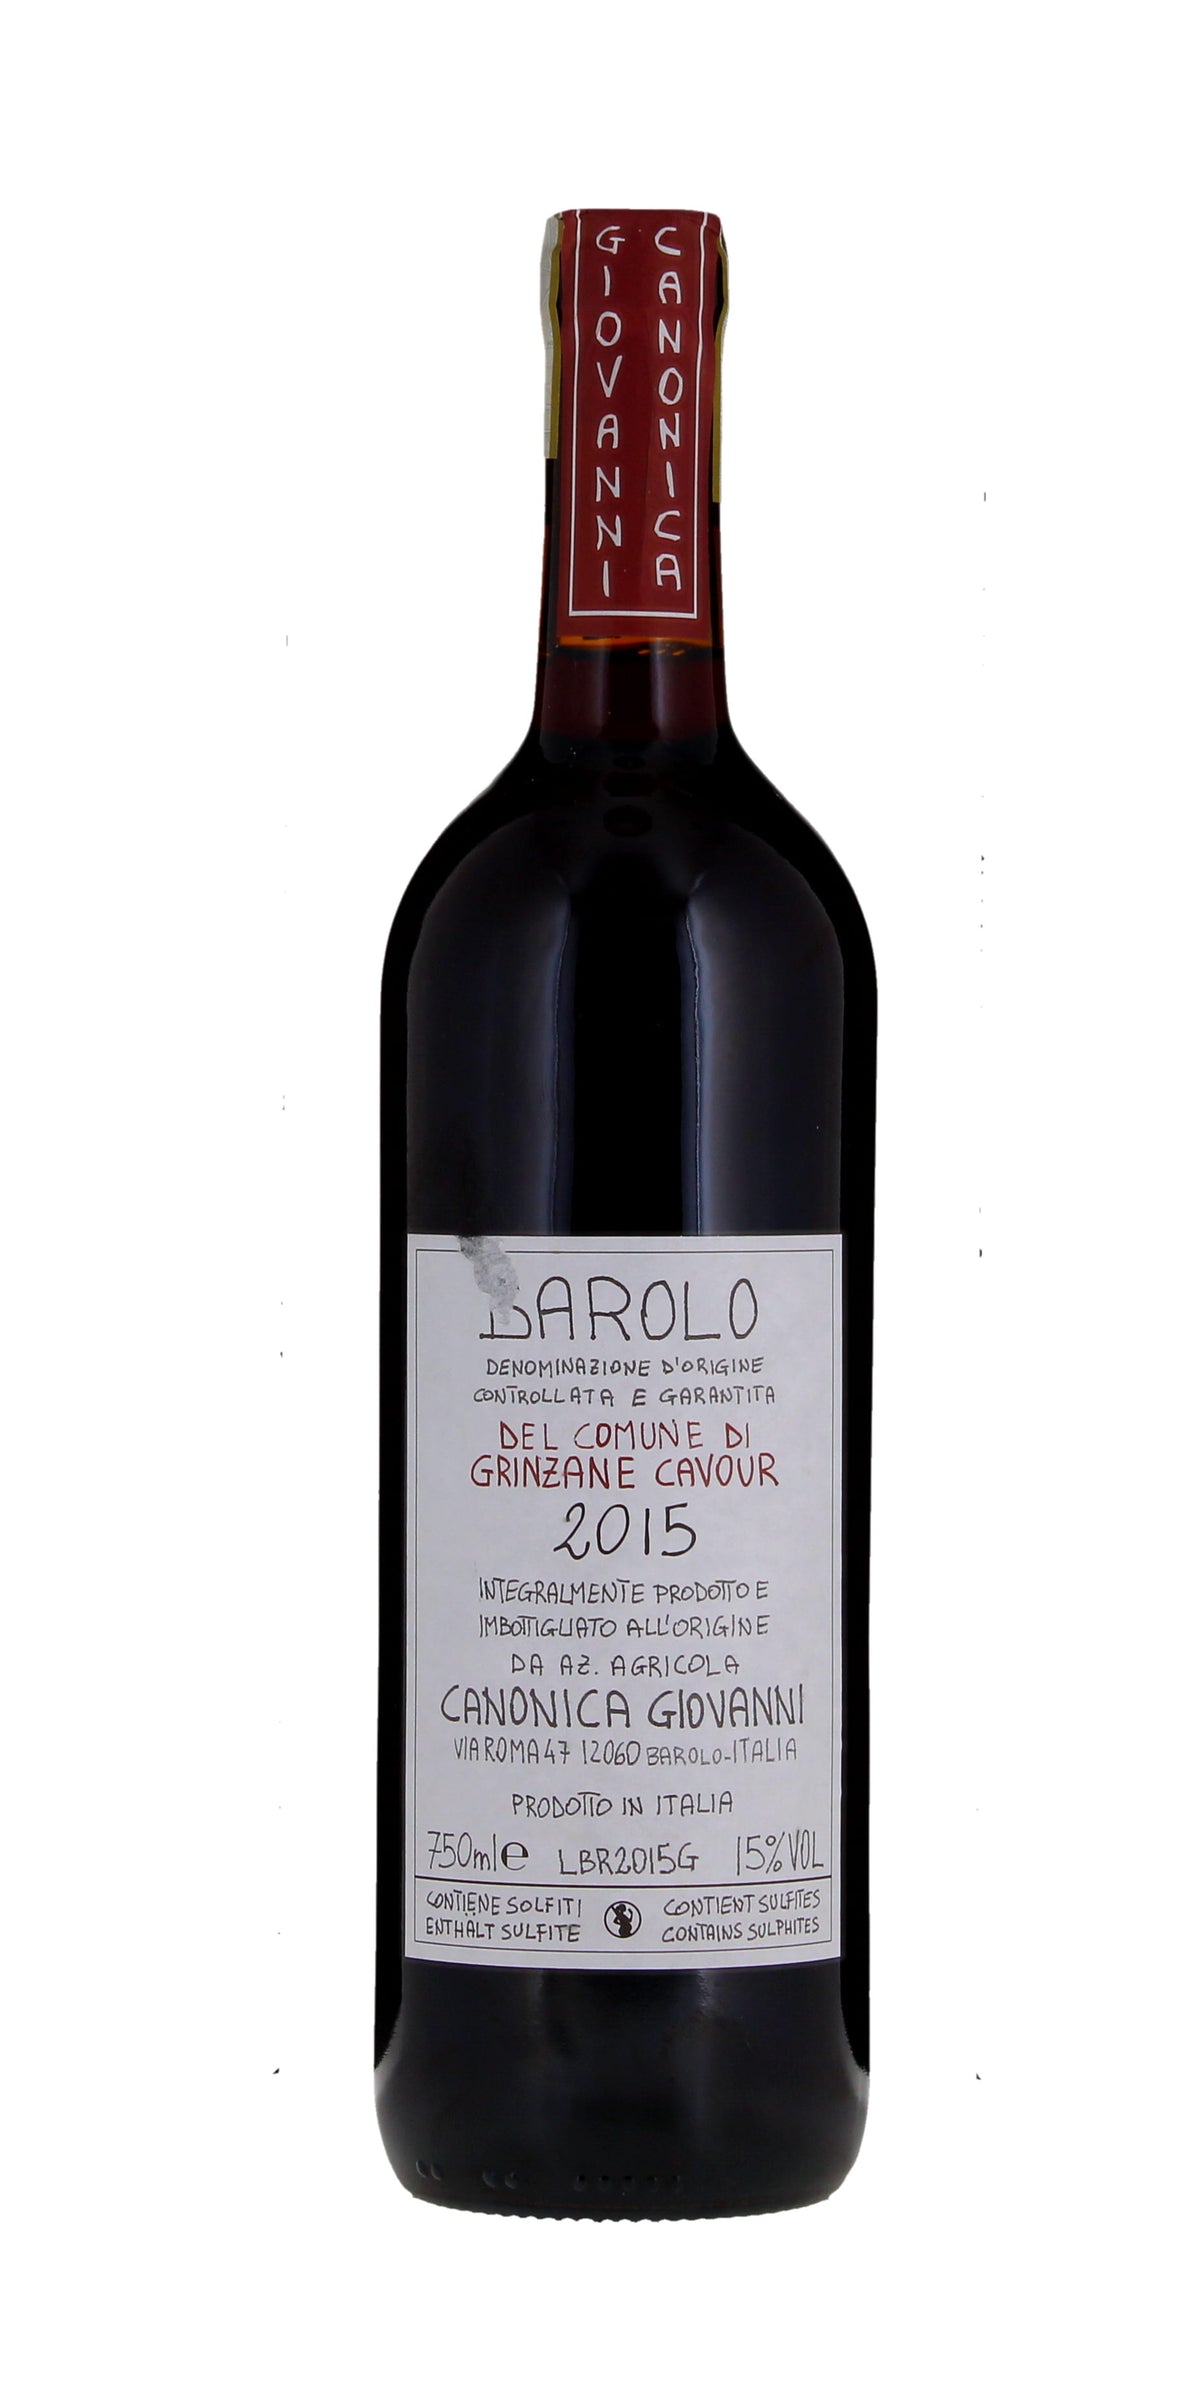 Giovanni Canonica 'Del Comune di Grinzane Cavour', Barolo DOCG, Piedmont 2015, 75cl